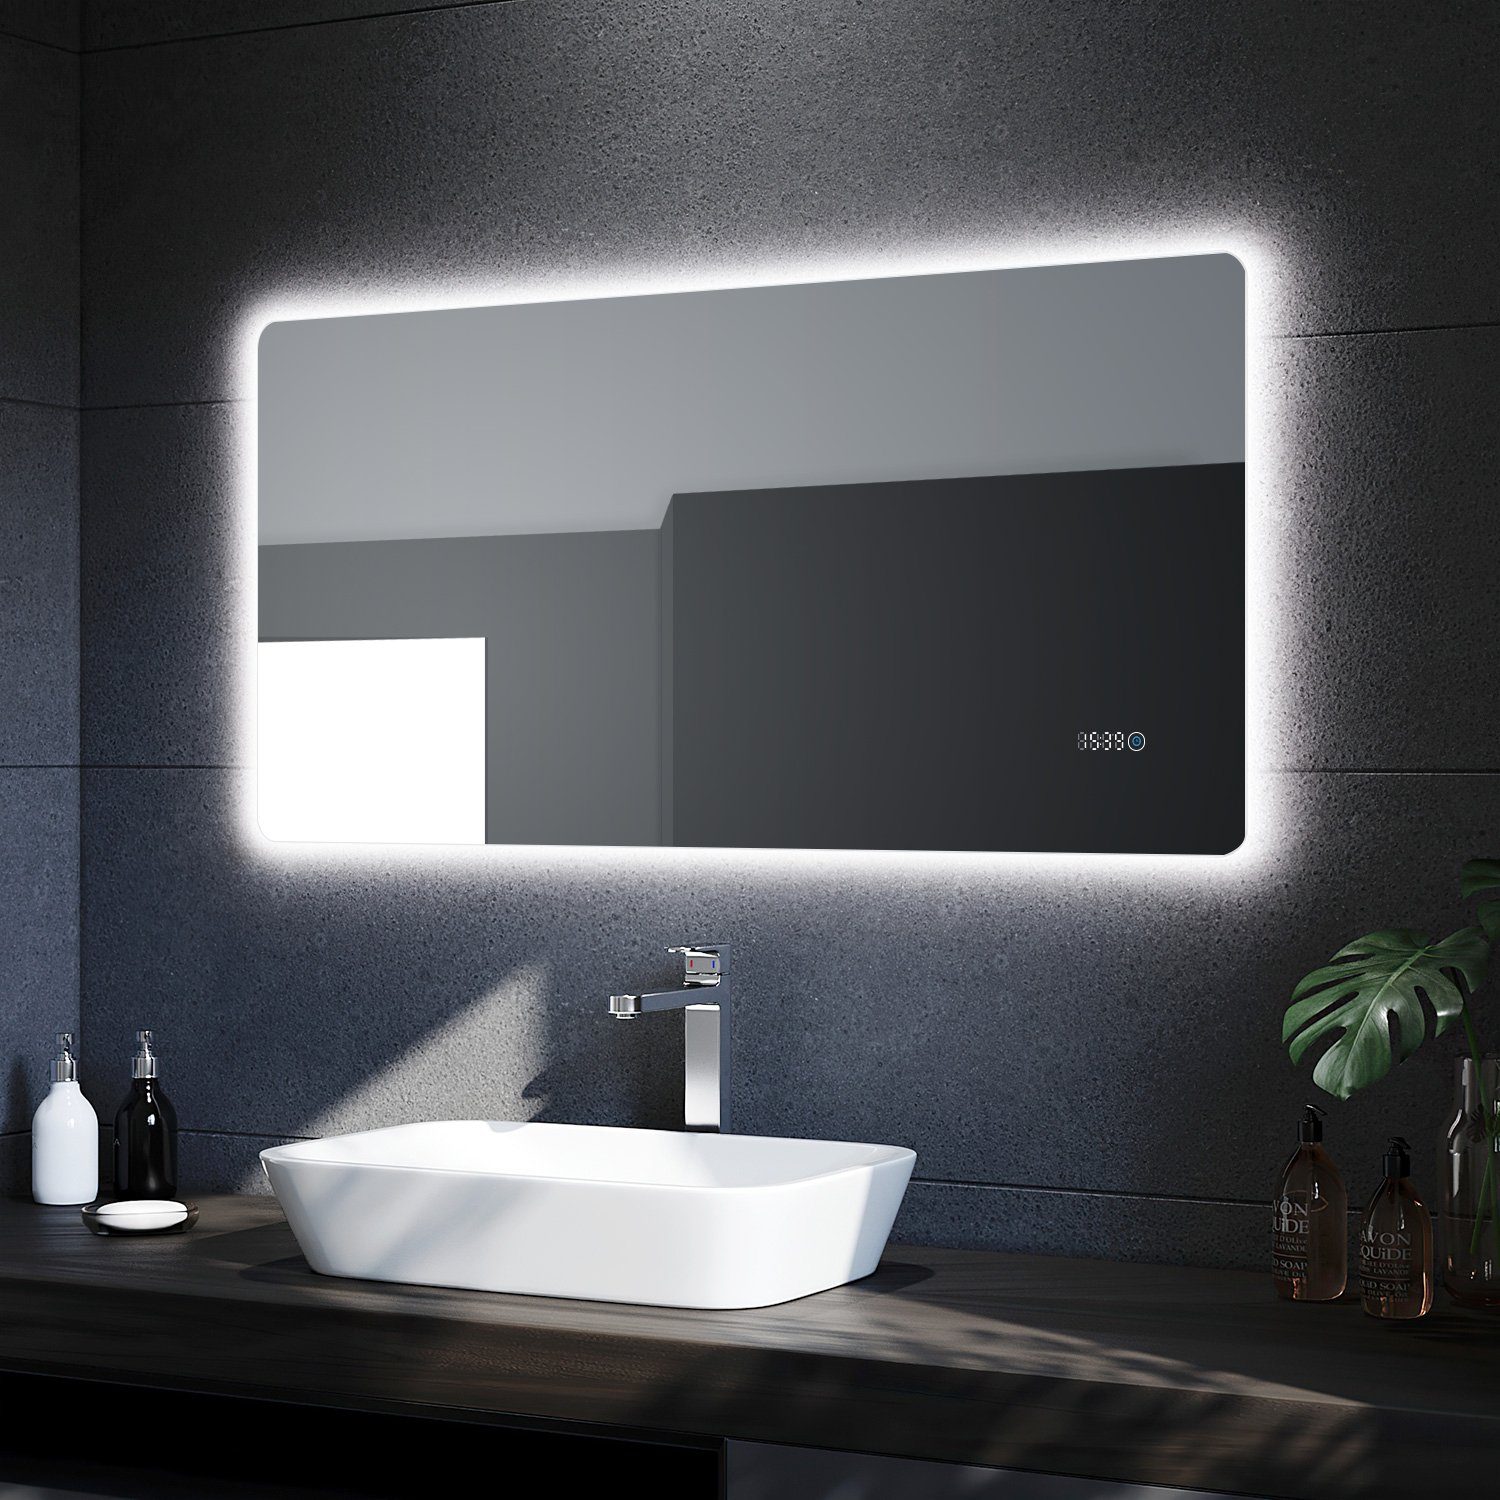 SONNI Badspiegel Badspiegel mit LED Uhr Temperaturanzeige 120x60 cm  Badezimmerspiegel, IP44 Energiesparend Wandspiegel mit Beleuchtung  Lichtspiegel